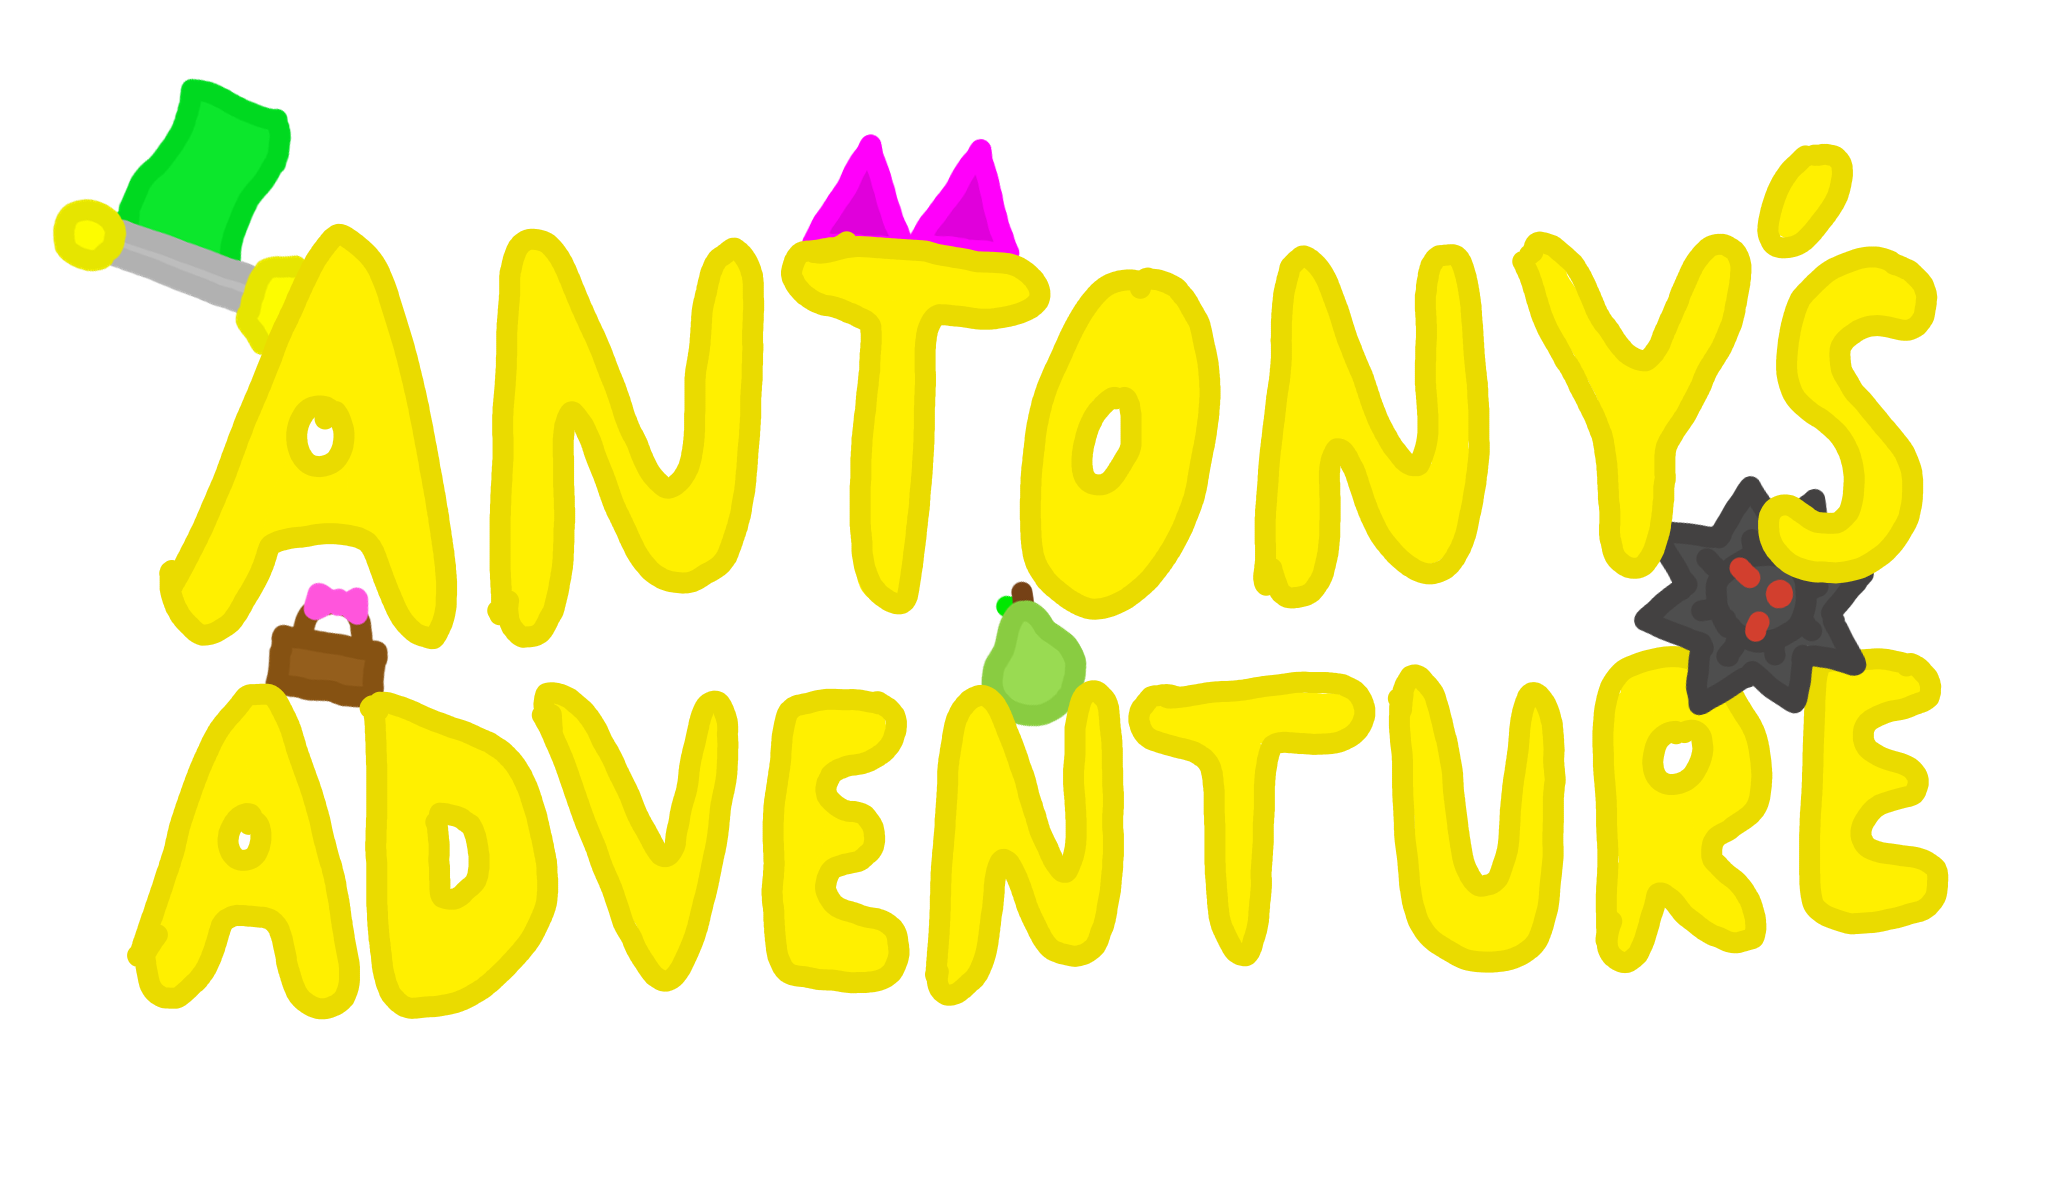 Antony's Adventure